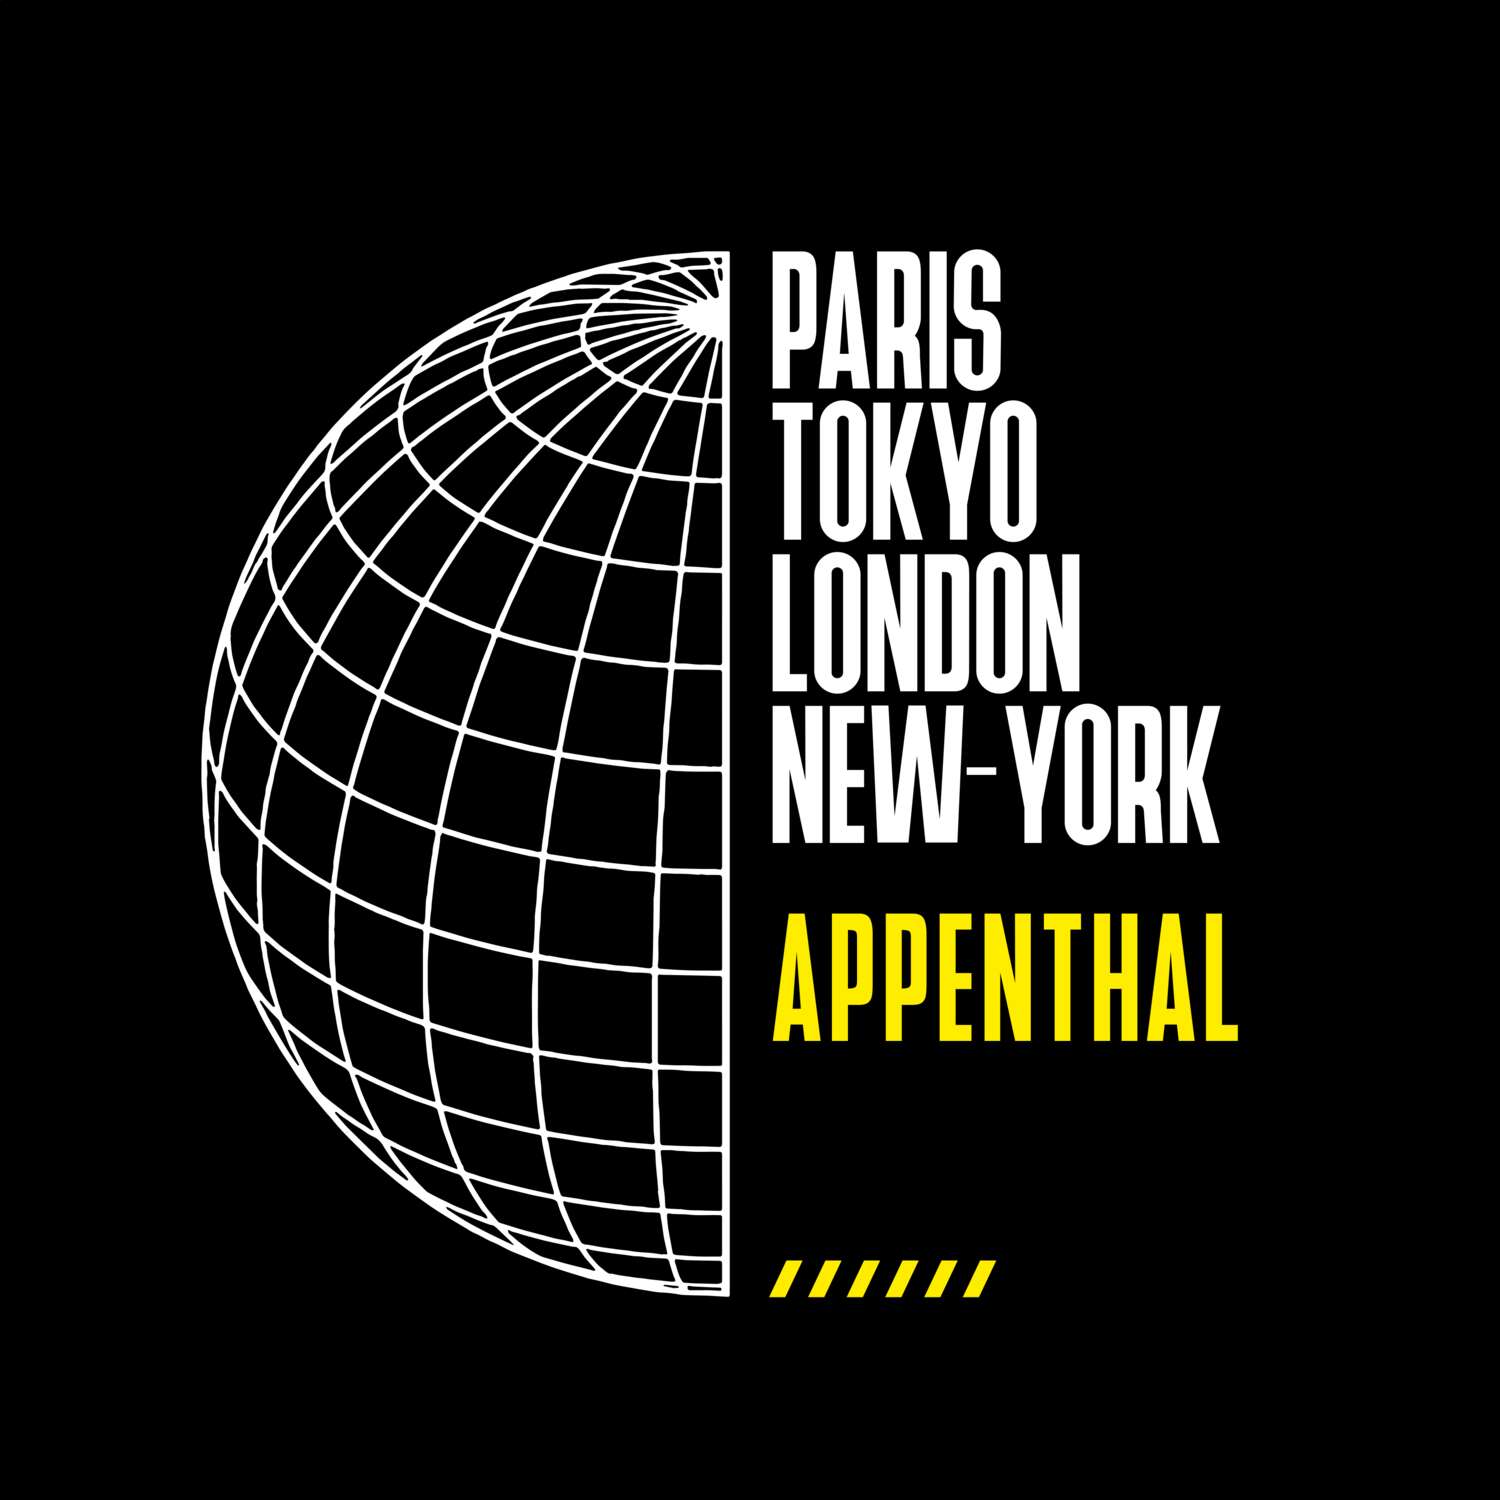 Appenthal T-Shirt »Paris Tokyo London«